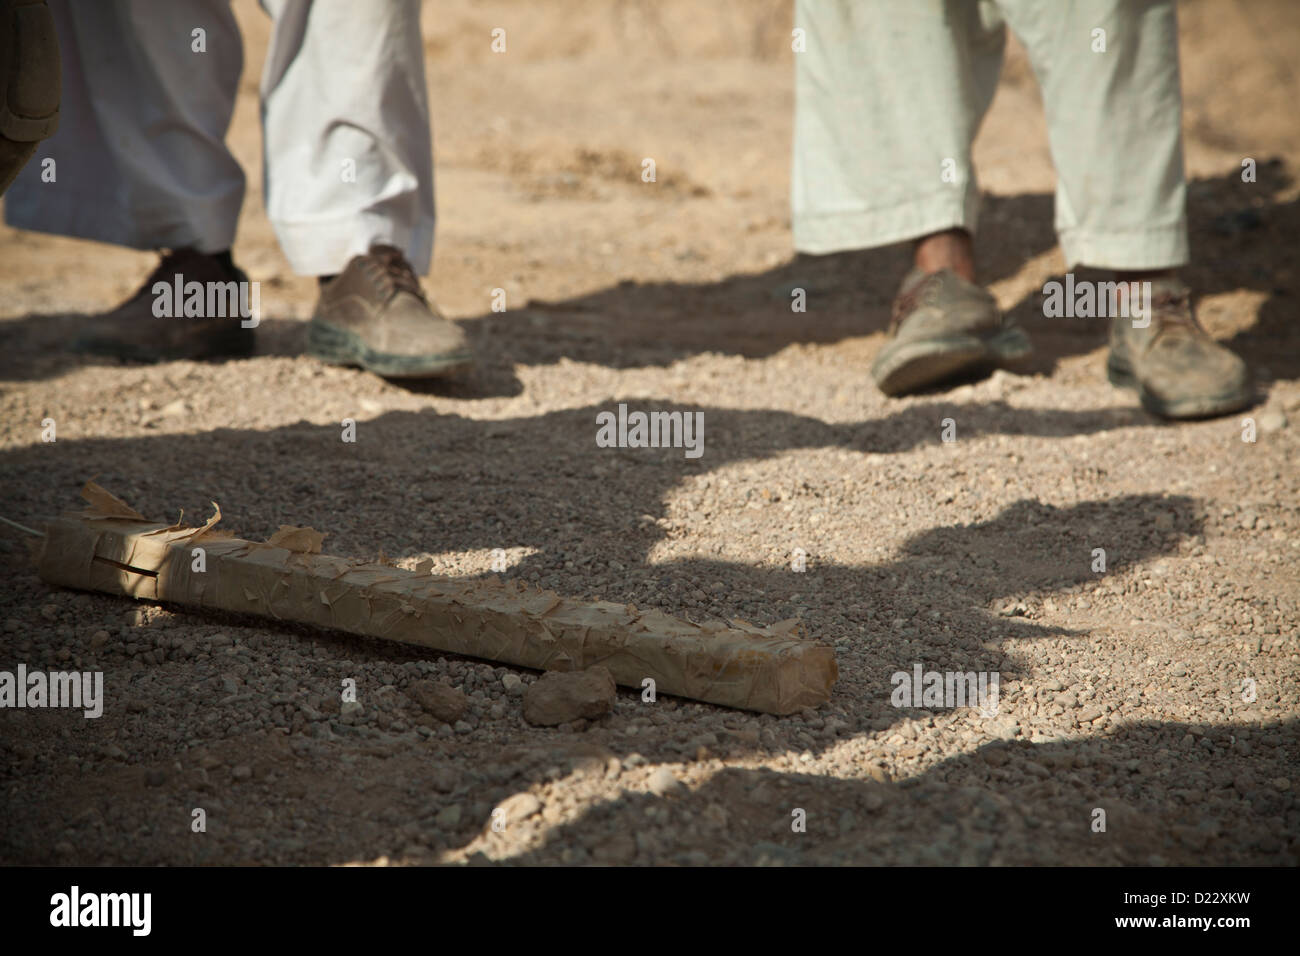 La policía local afgana observar un dispositivo explosivo improvisado el componente de formación en la provincia de Farah, Afganistán, el 10 de enero de 2013. Las fuerzas de seguridad nacionales afganas han tomado la iniciativa en las operaciones de seguridad, con las fuerzas de la coalición como mentores, para traer secur Foto de stock